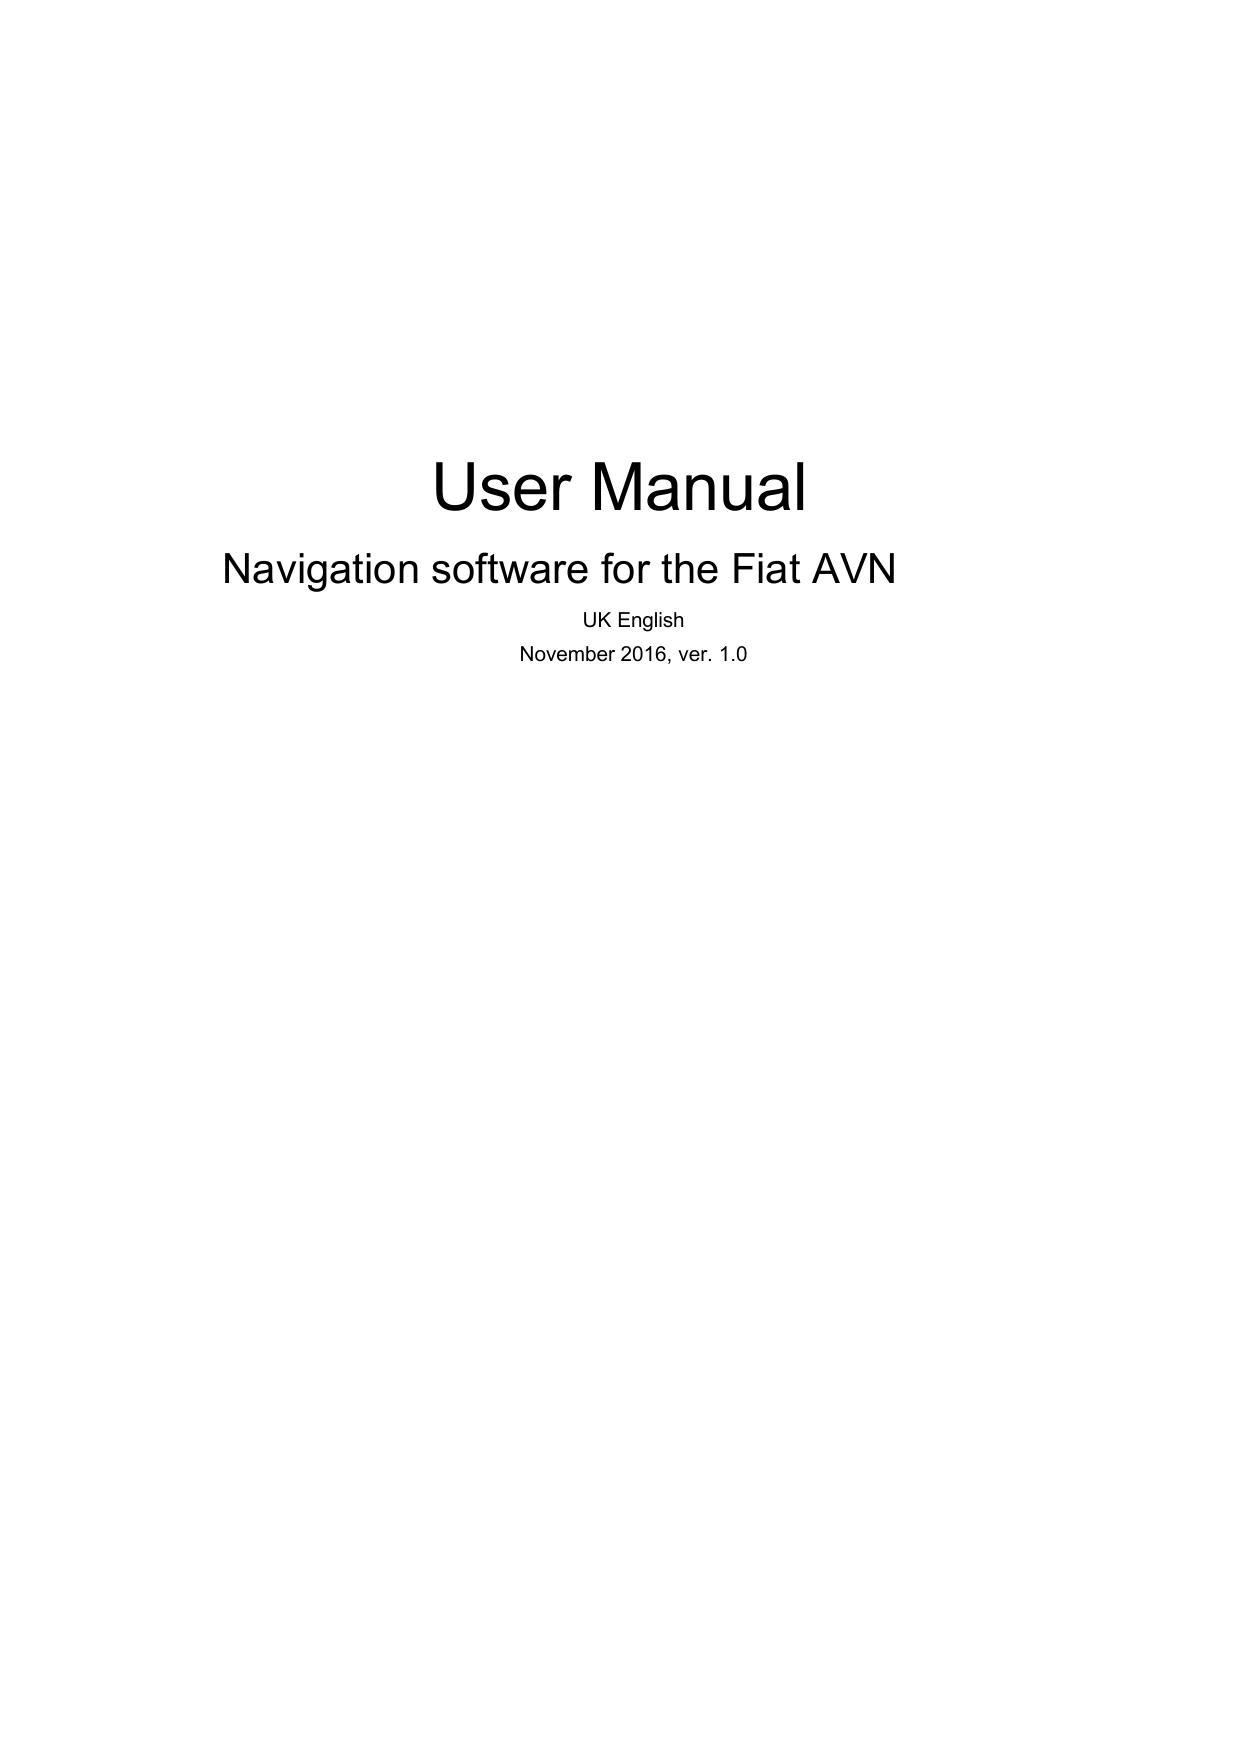 fiat-avn-navigation-software-user-manual-2016.pdf